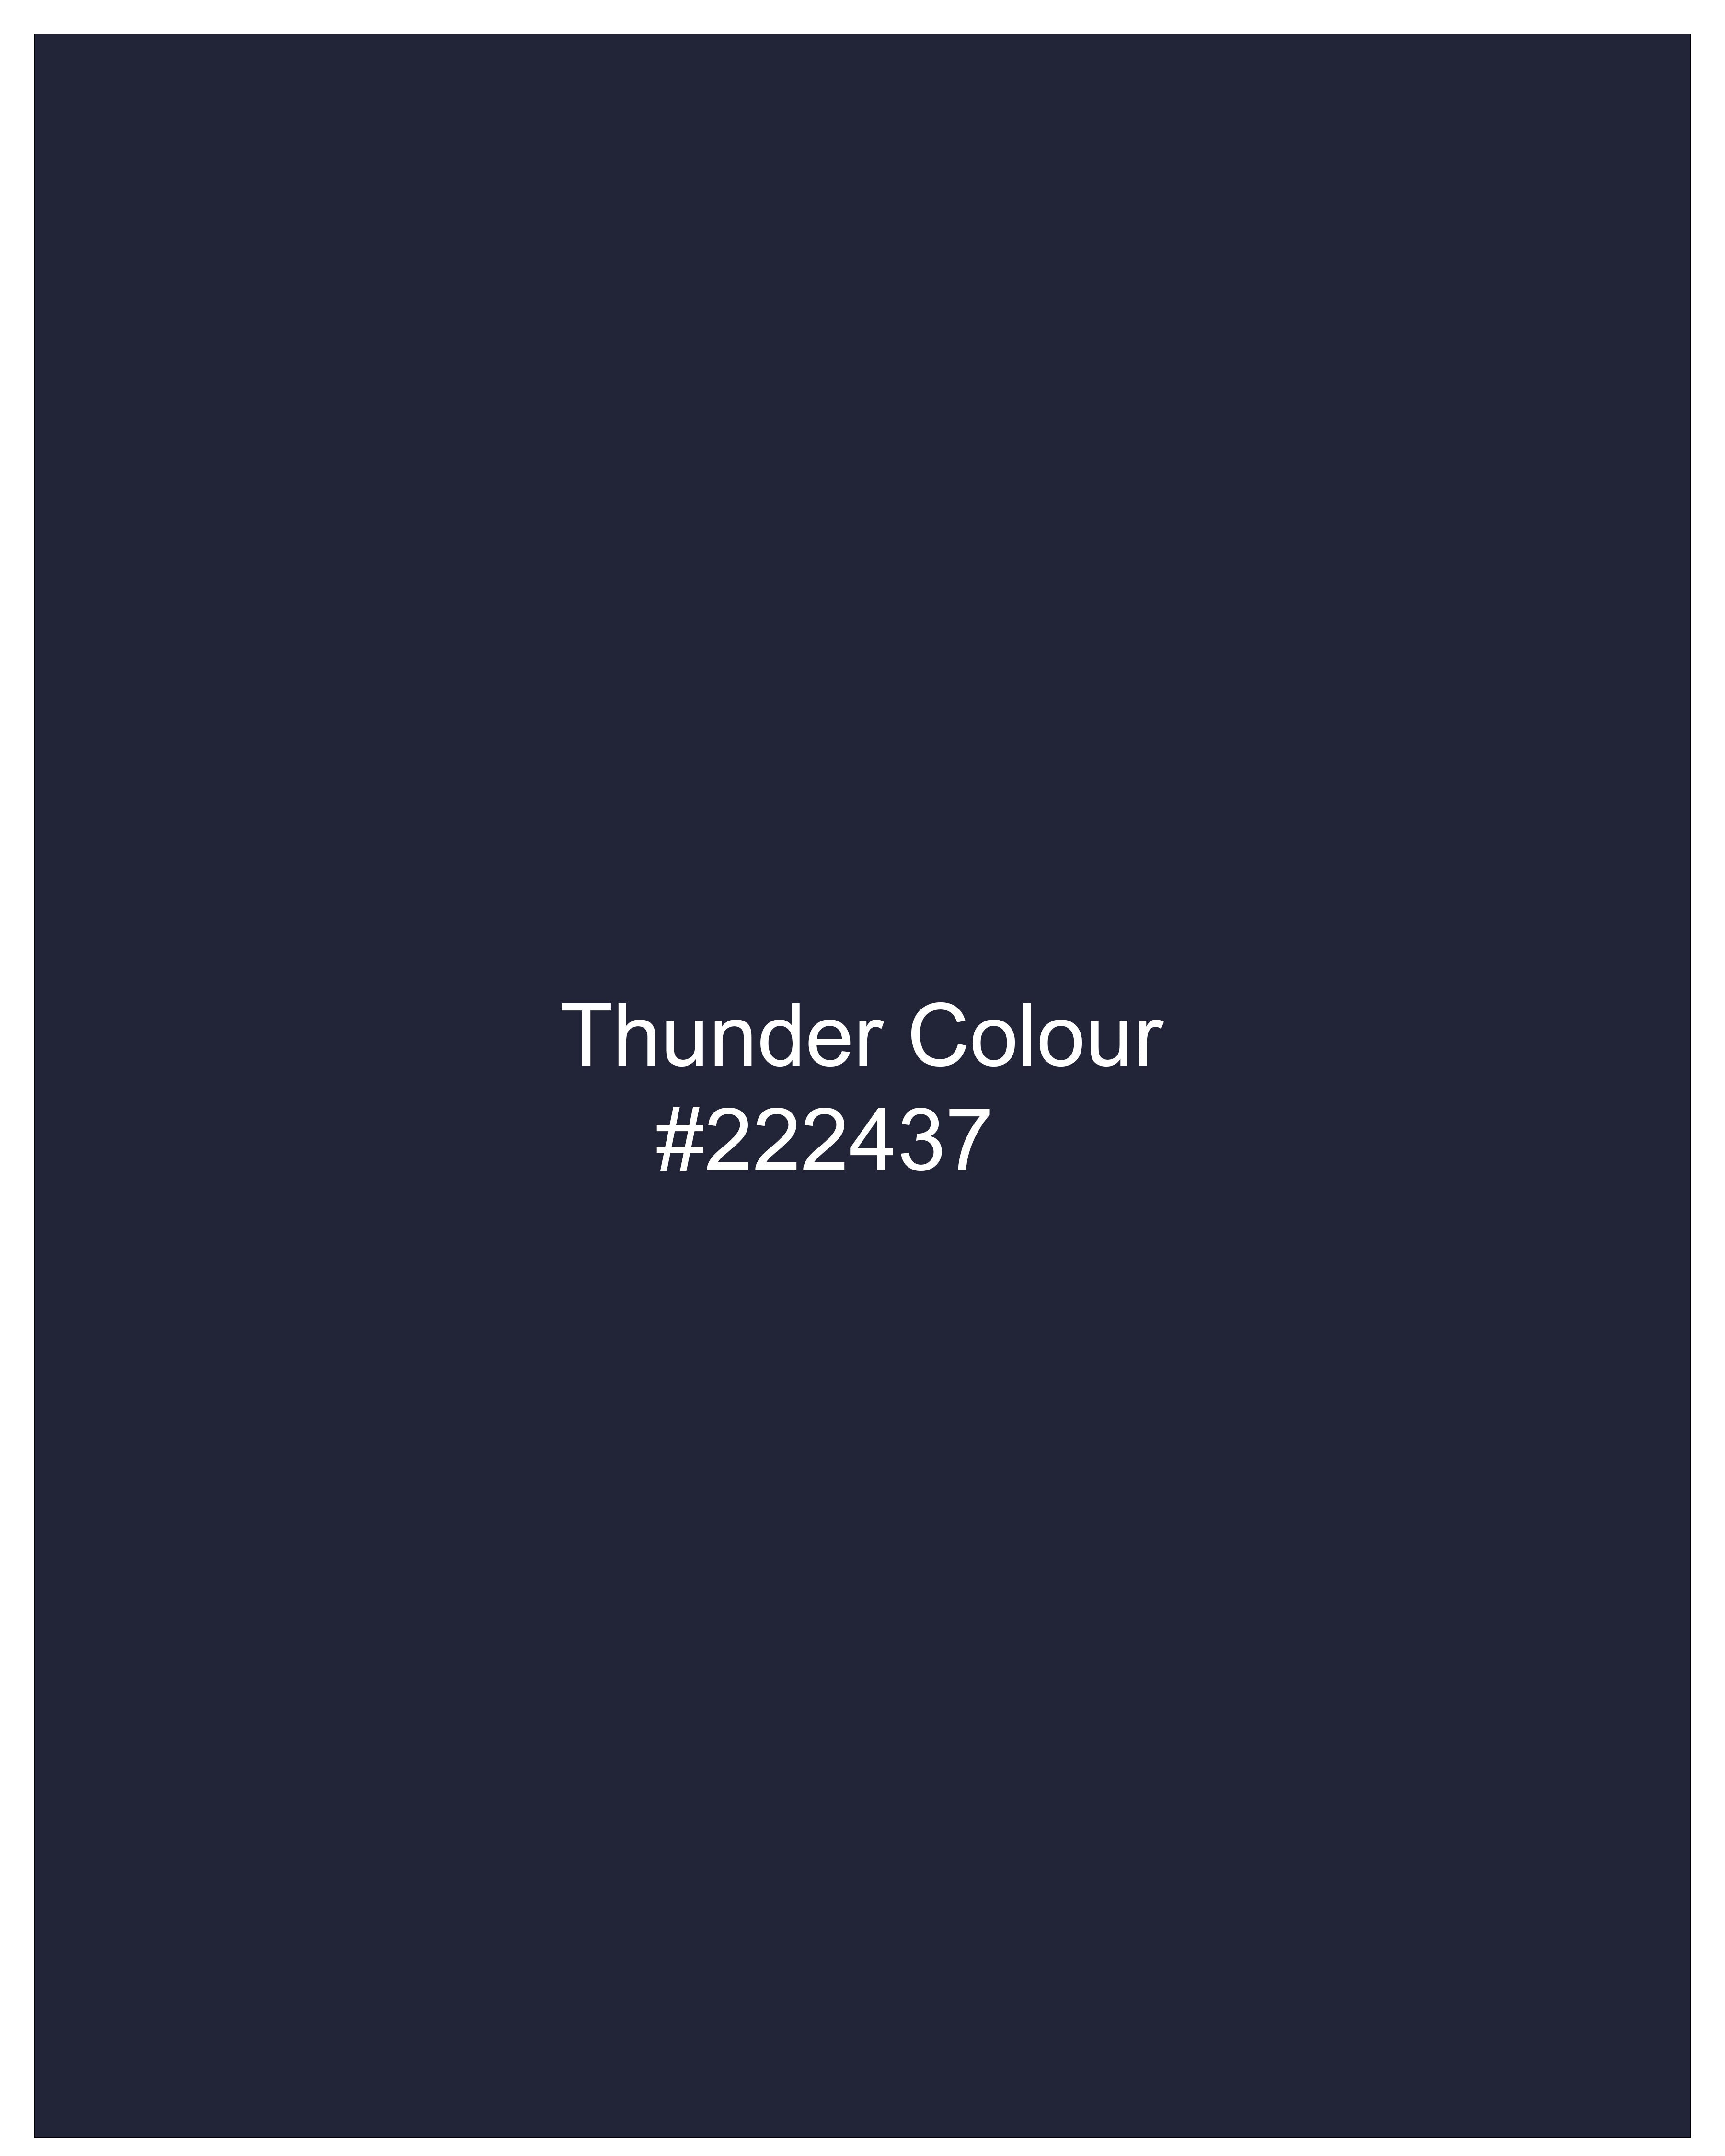 Thunder Blue Velvet Tuxedo Designer Blazer BL2233-BKL-36, BL2233-BKL-38, BL2233-BKL-40, BL2233-BKL-42, BL2233-BKL-44, BL2233-BKL-46, BL2233-BKL-48, BL2233-BKL-50, BL2233-BKL-52, BL2233-BKL-54, BL2233-BKL-56, BL2233-BKL-58, BL2233-BKL-60